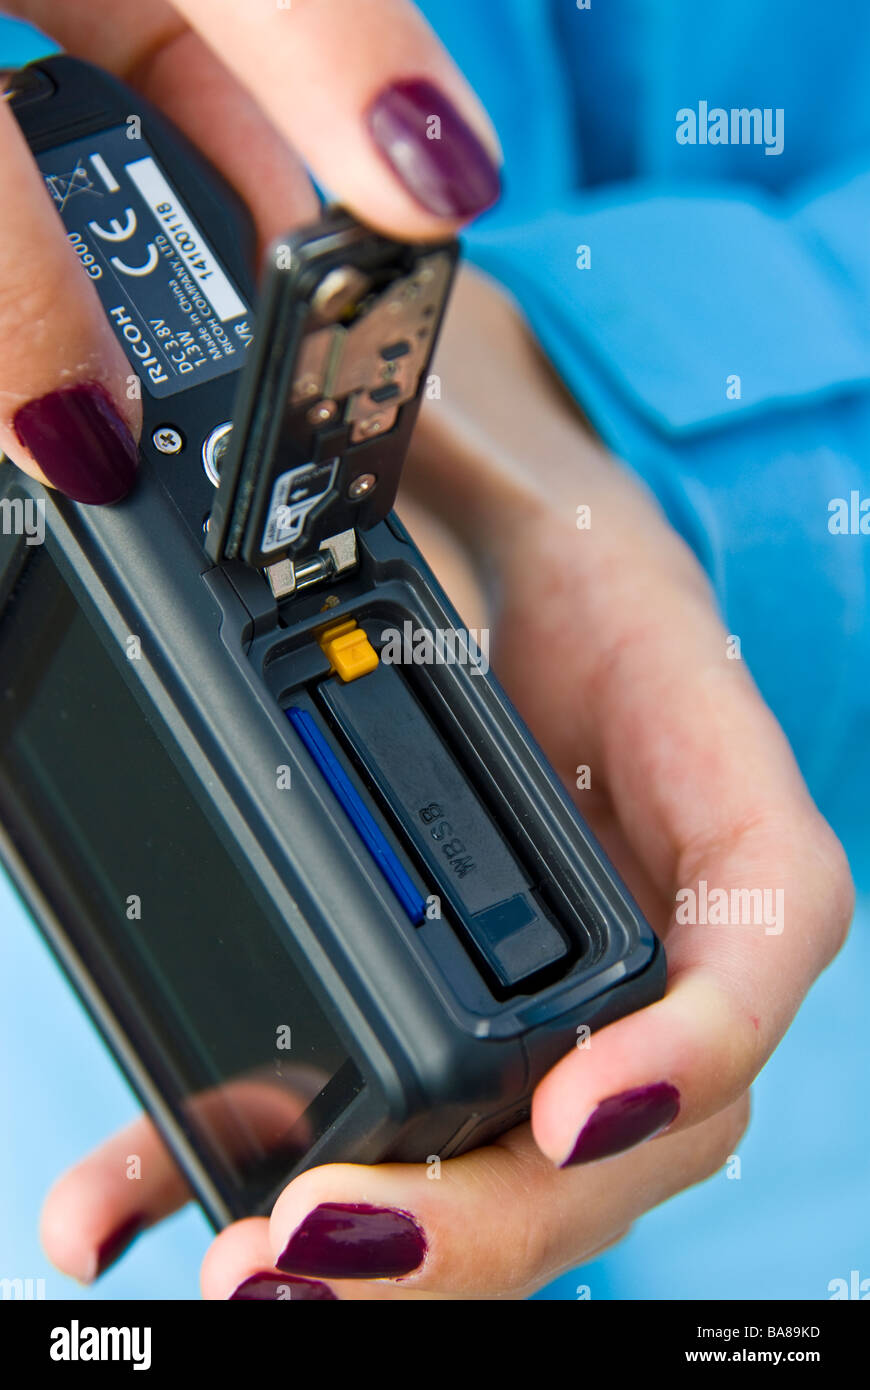 Ragazza fotocamera digitale compatta che mostra la batteria e chip di memoria della scheda di memoria | dito Batterie Chipkarte digitale Kompakt Kamera Foto Stock